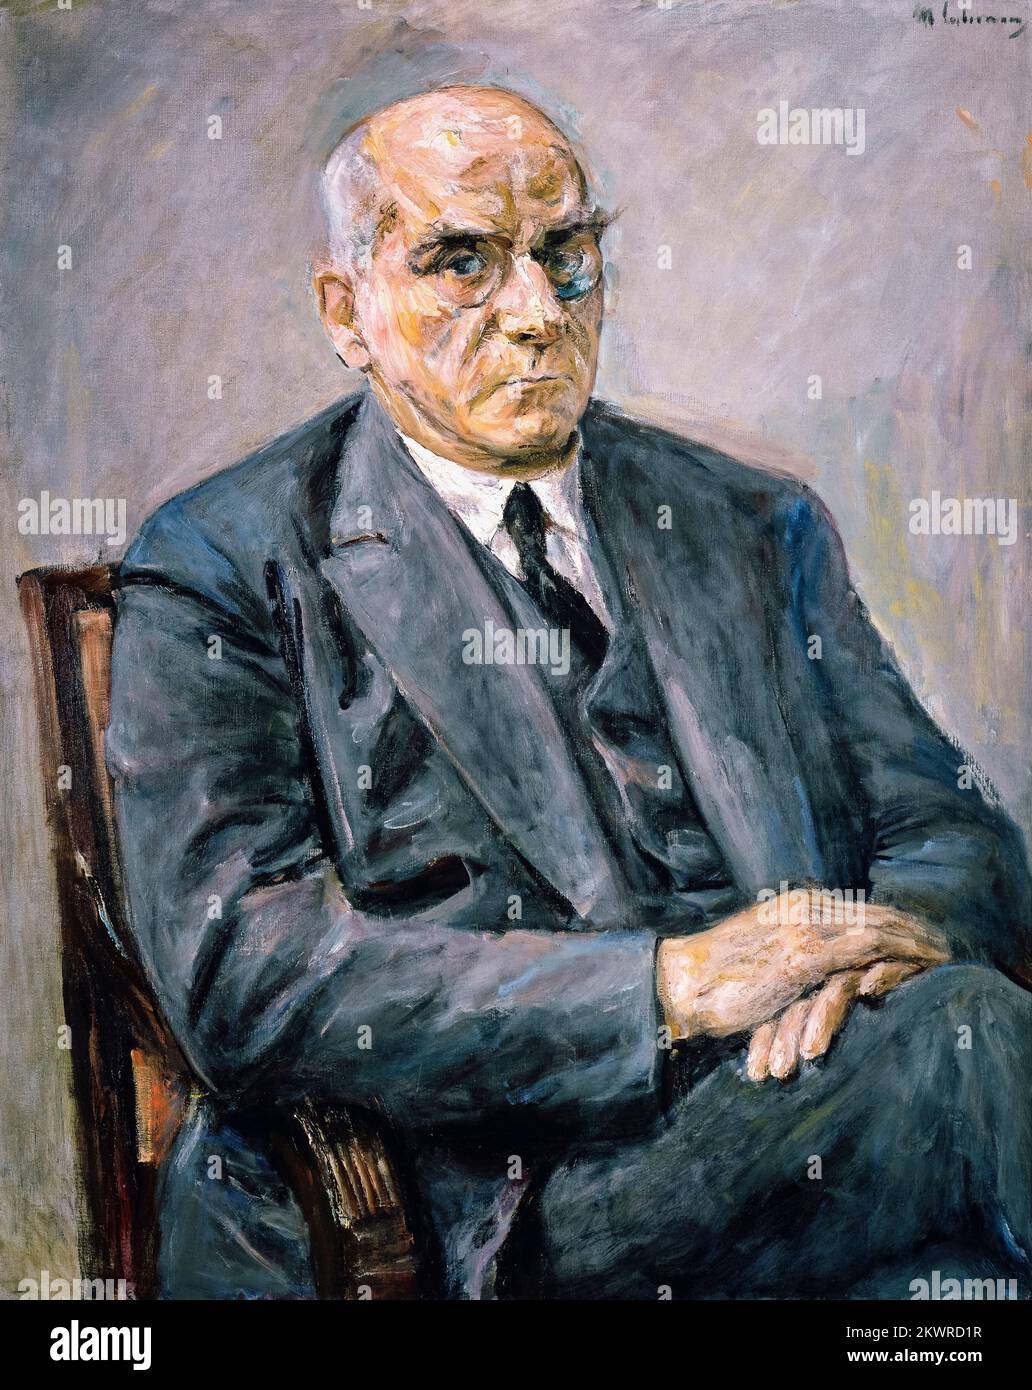 Otto Braun (1872-1955), político del Partido Socialdemócrata de Alemania (SPD) durante la República de Weimar de (1920-1932) y Ministro Presidente del Estado Libre de Prusia, retrato pintado al óleo sobre lienzo de Max Liebermann, 1932 Foto de stock